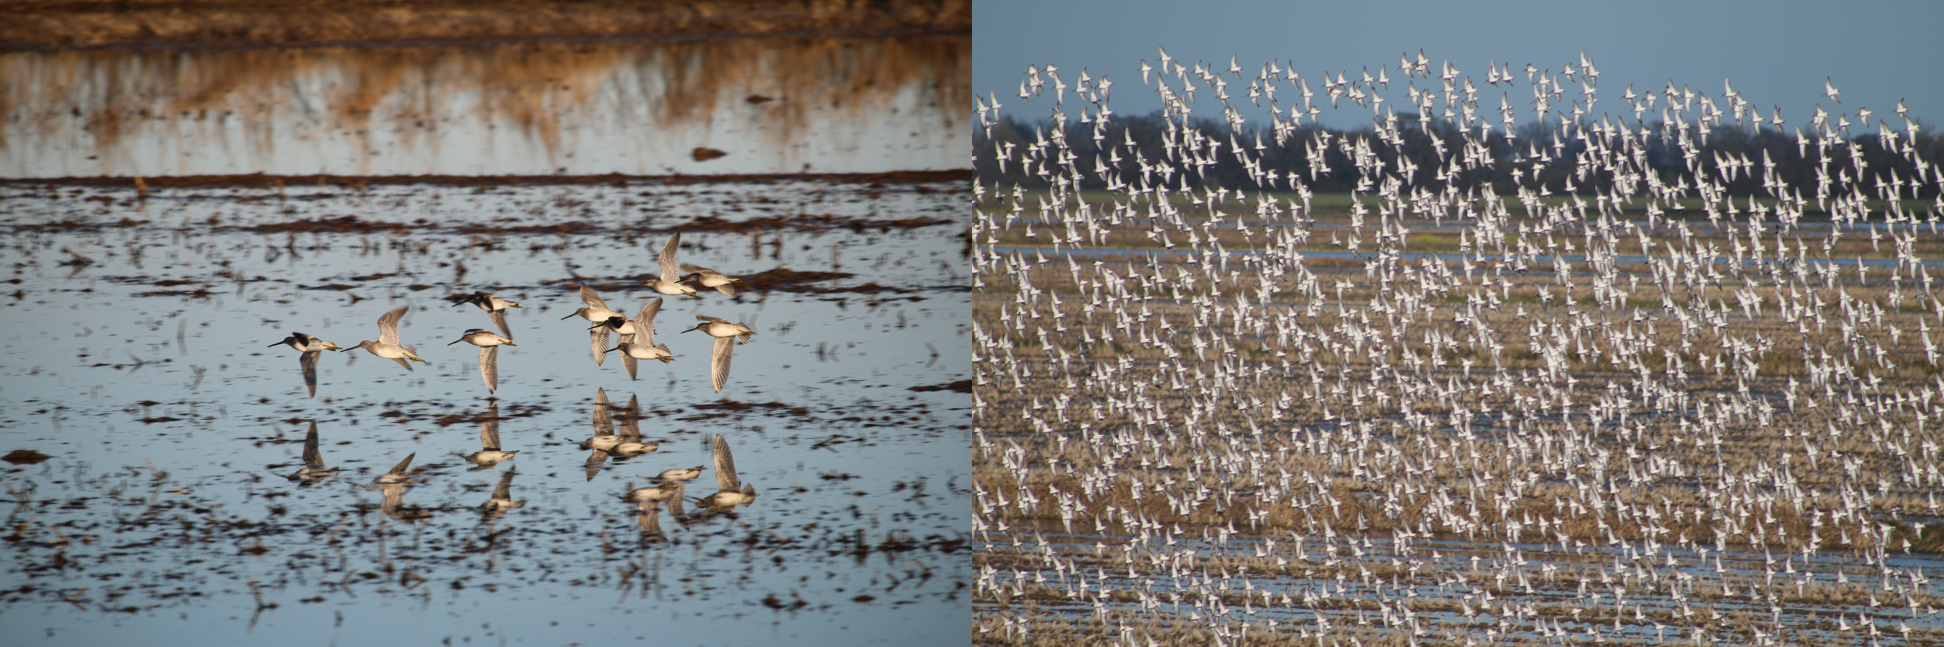 flock of birds flying over flooded fields